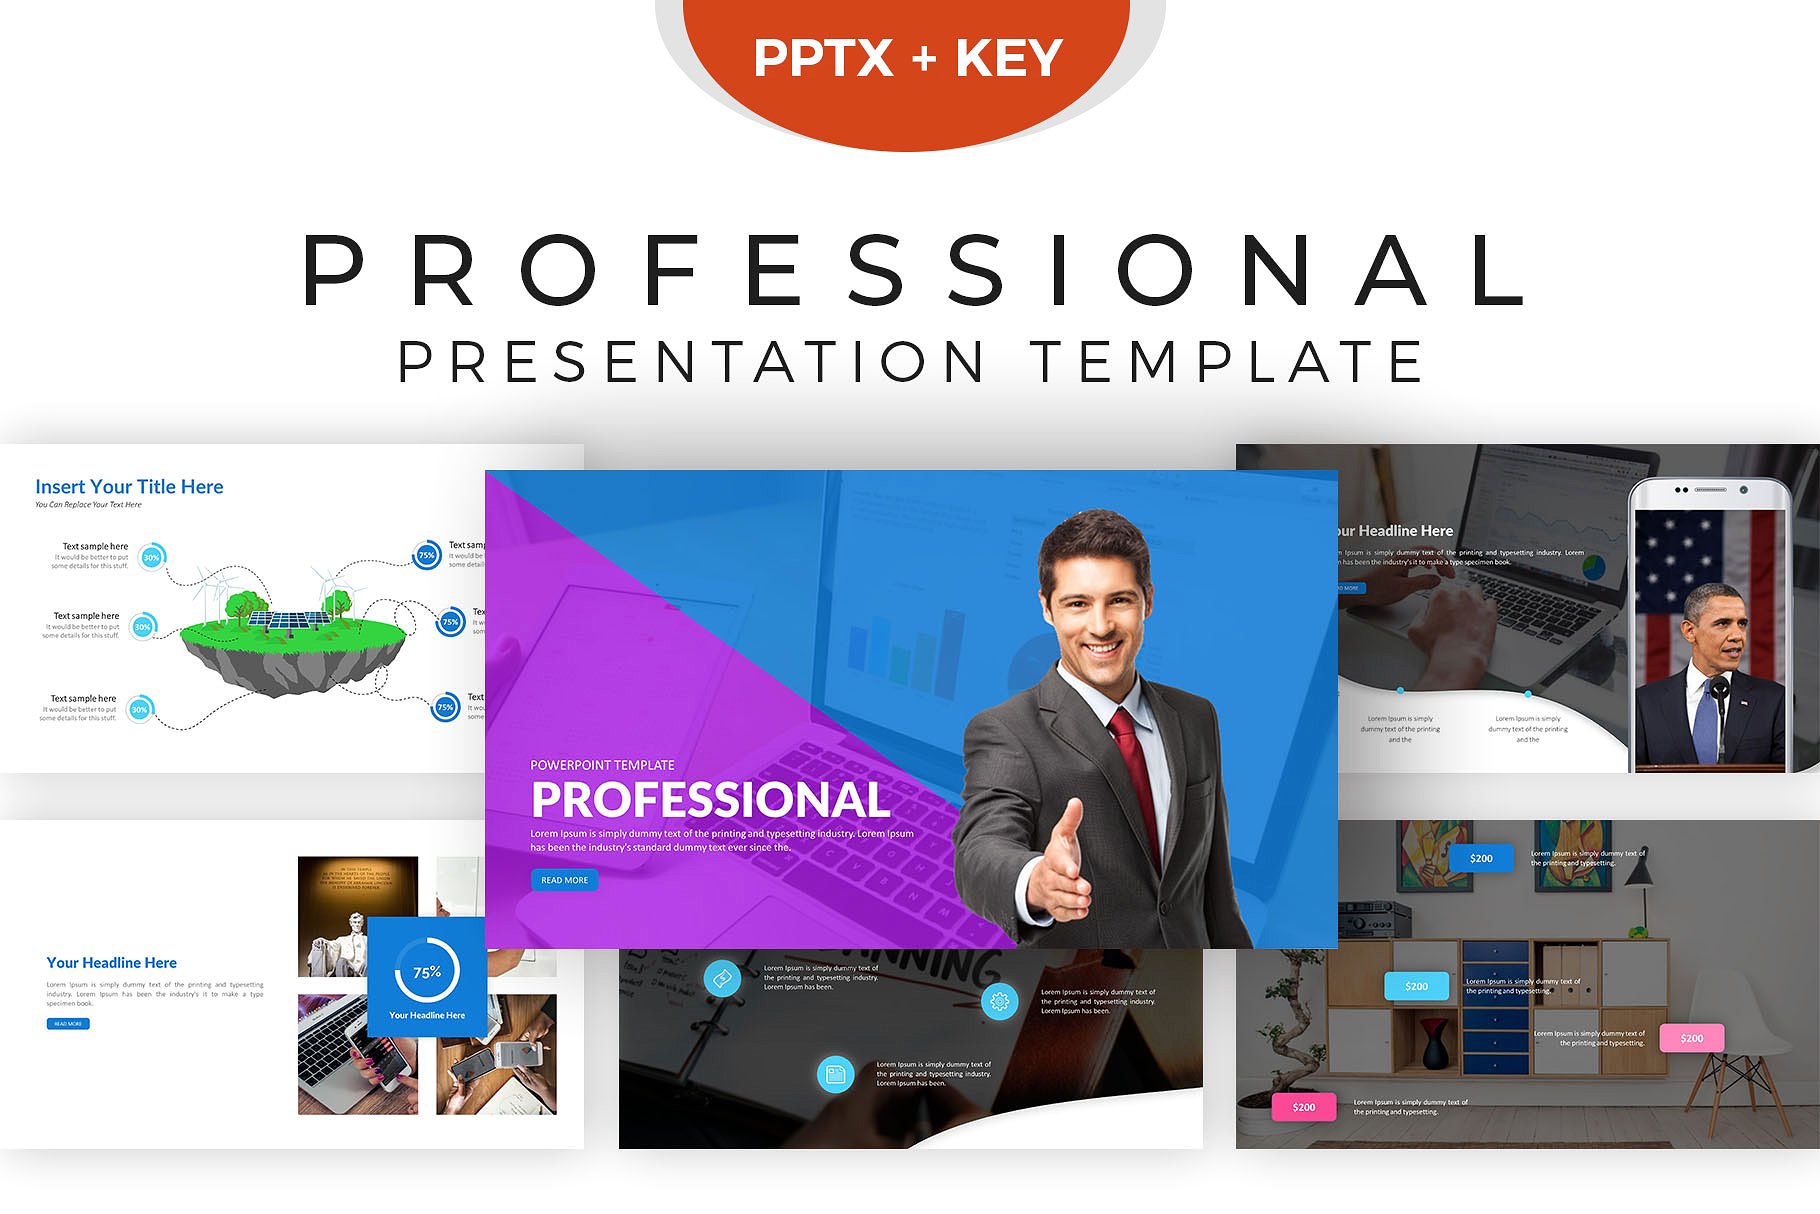 现代专业介绍的幻灯片模板下载 Professional Presentation Template [key,PPTX]插图